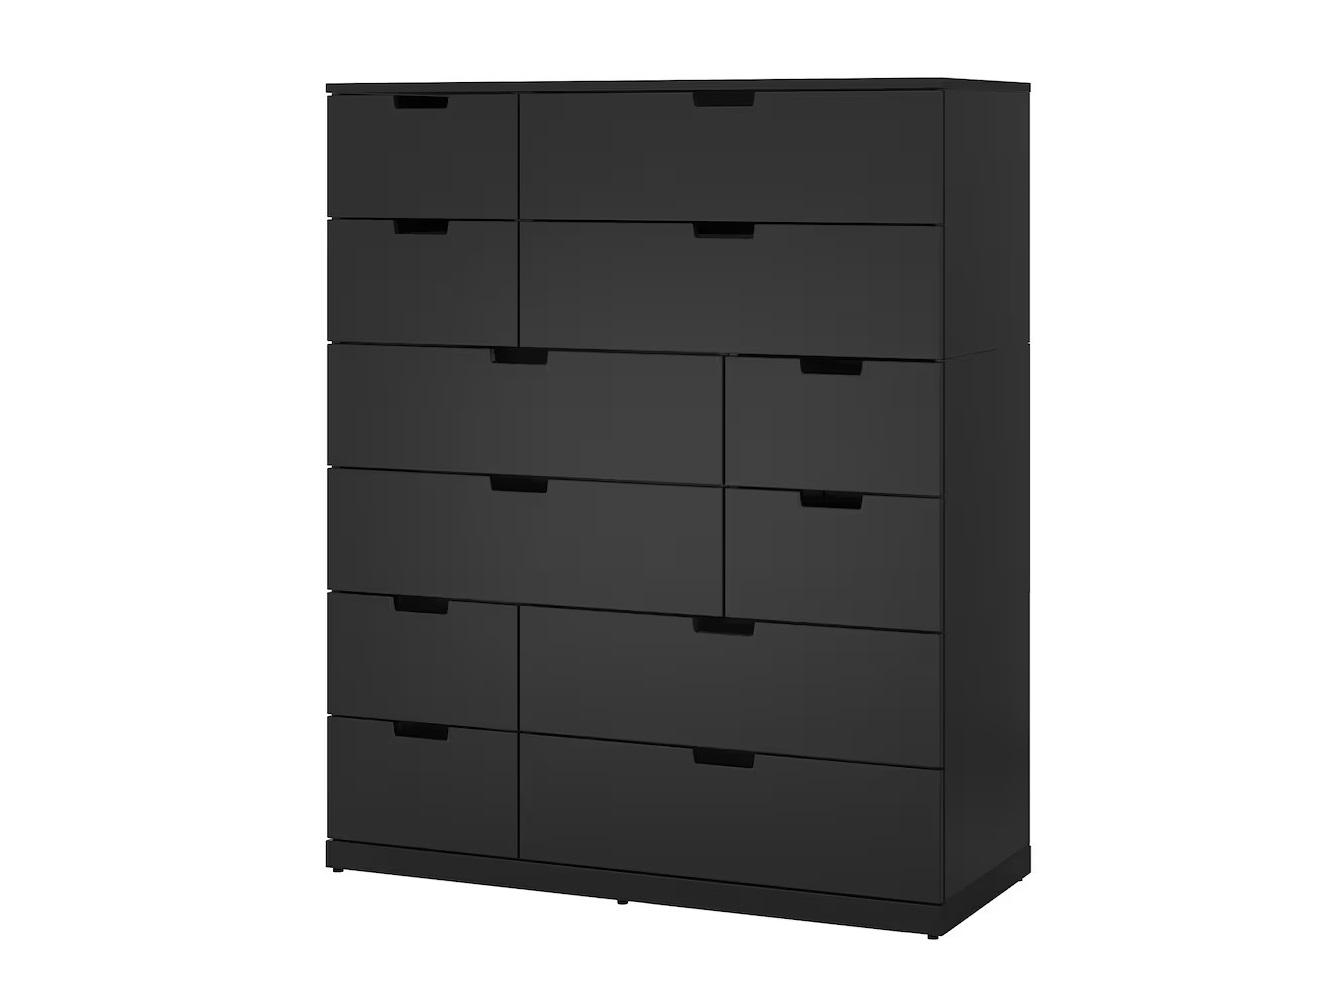 Комод Нордли 32 black ИКЕА (IKEA) изображение товара